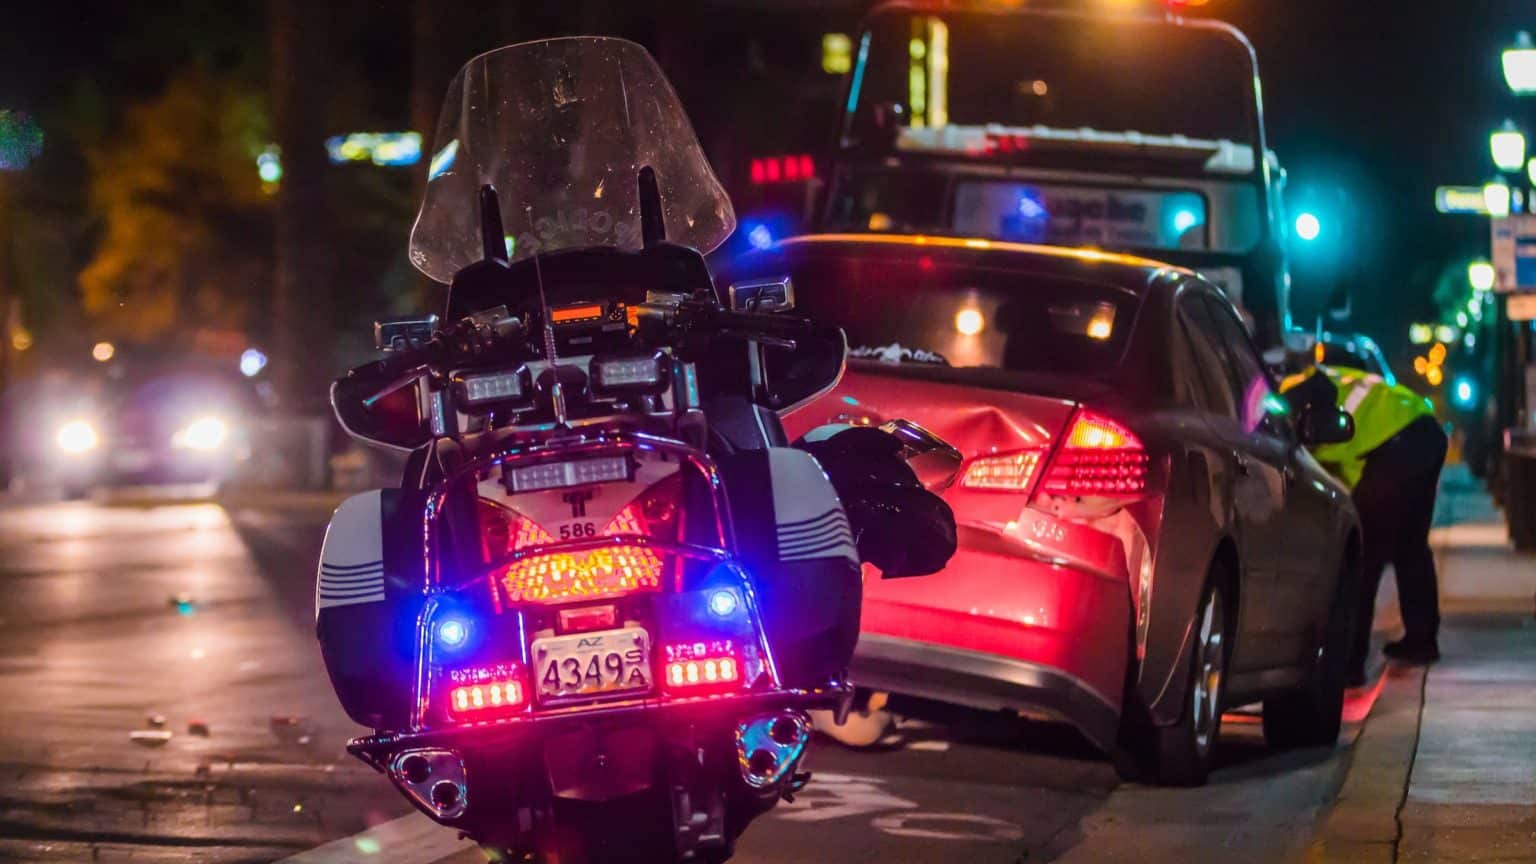 Dvije teške prometne nesreće u Zadru u jednoj noći: Motociklist i vozač automobila teško ozlijeđeni